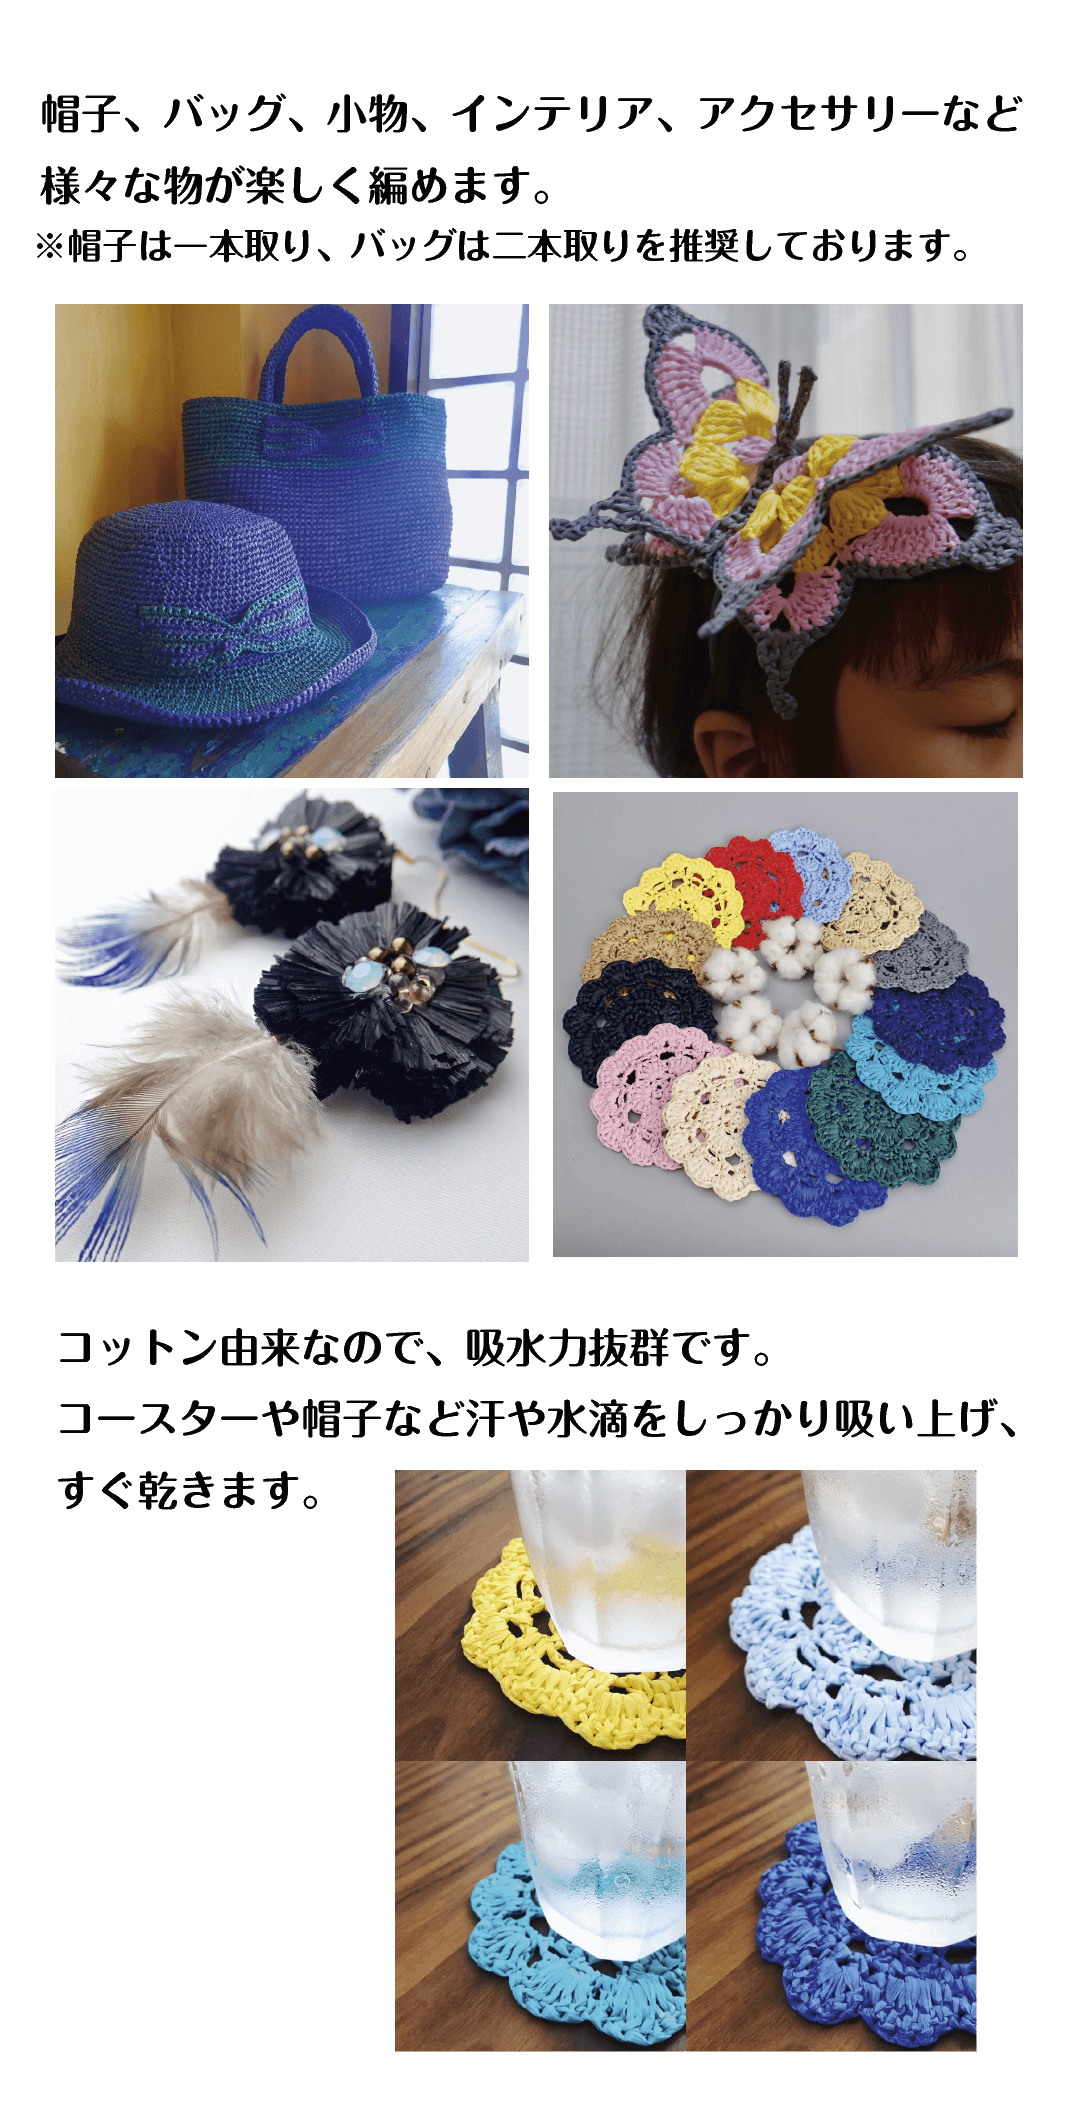 コットンラフィアでラフィアバッグ、ハット、帽子、巾着バッグそしてサンダルが編めます。手芸初心者におすすめのラフィア風手芸糸です。